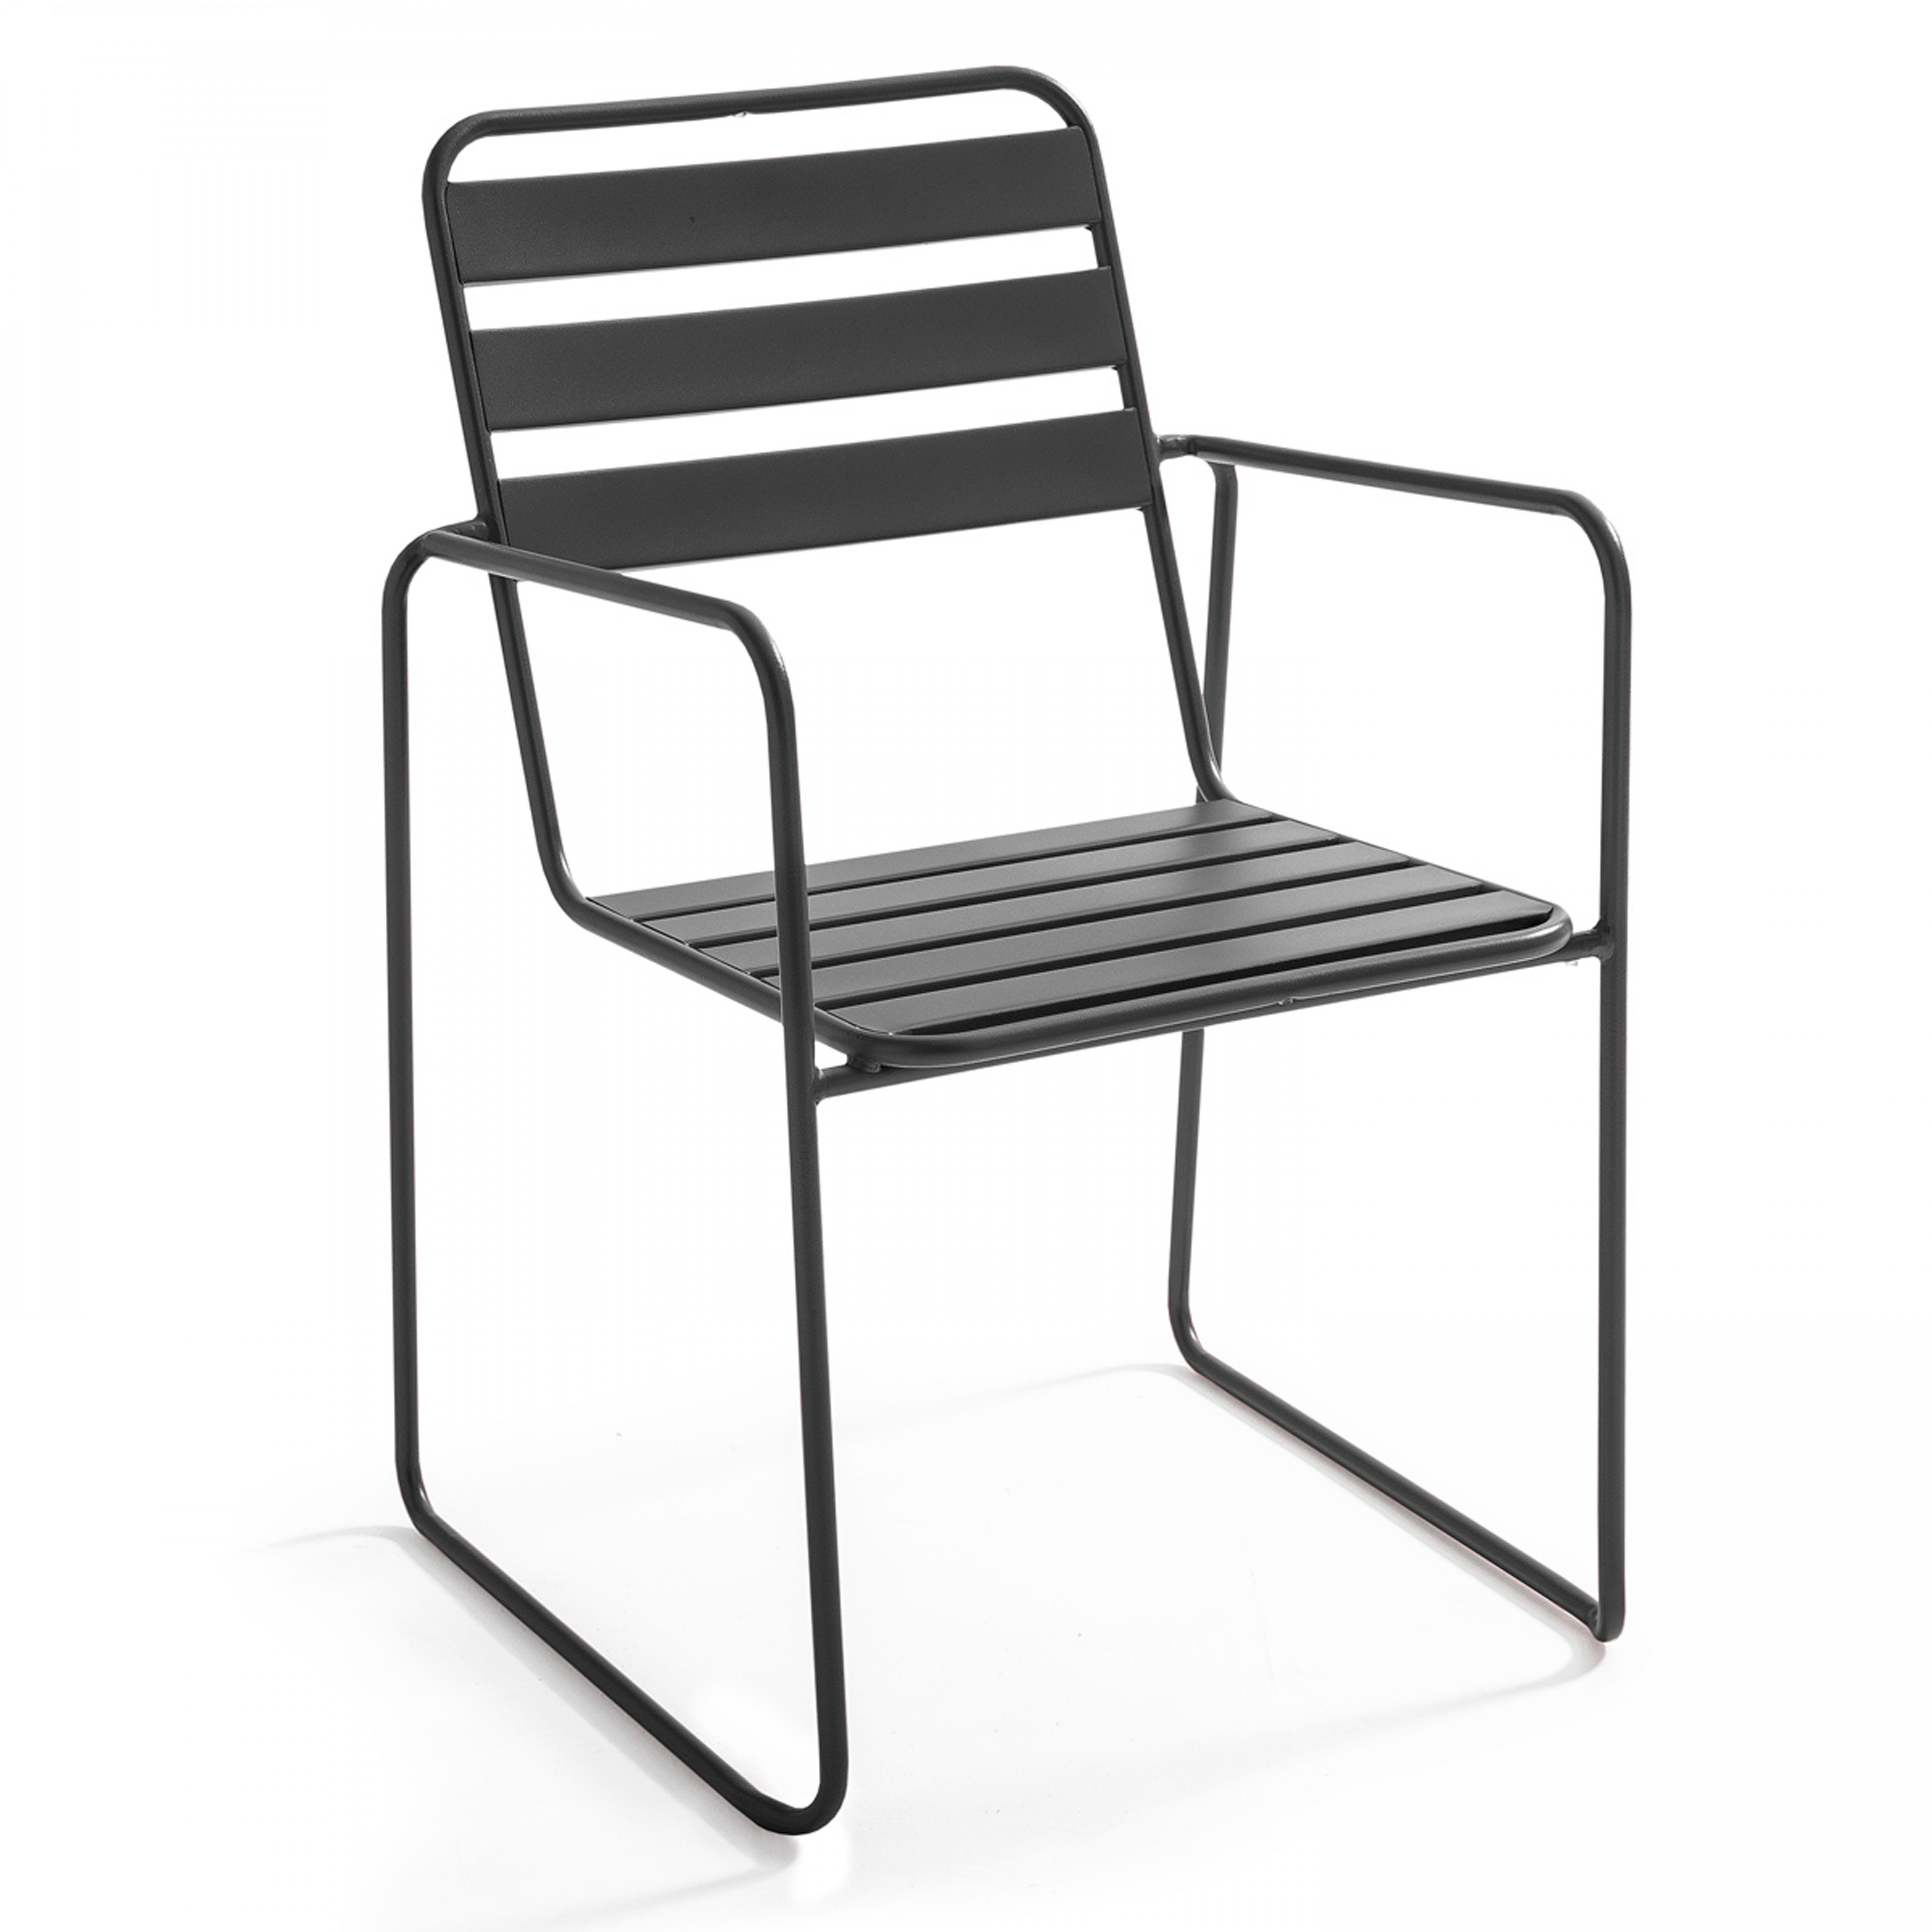 Chaise en métal avec accoudoirs design